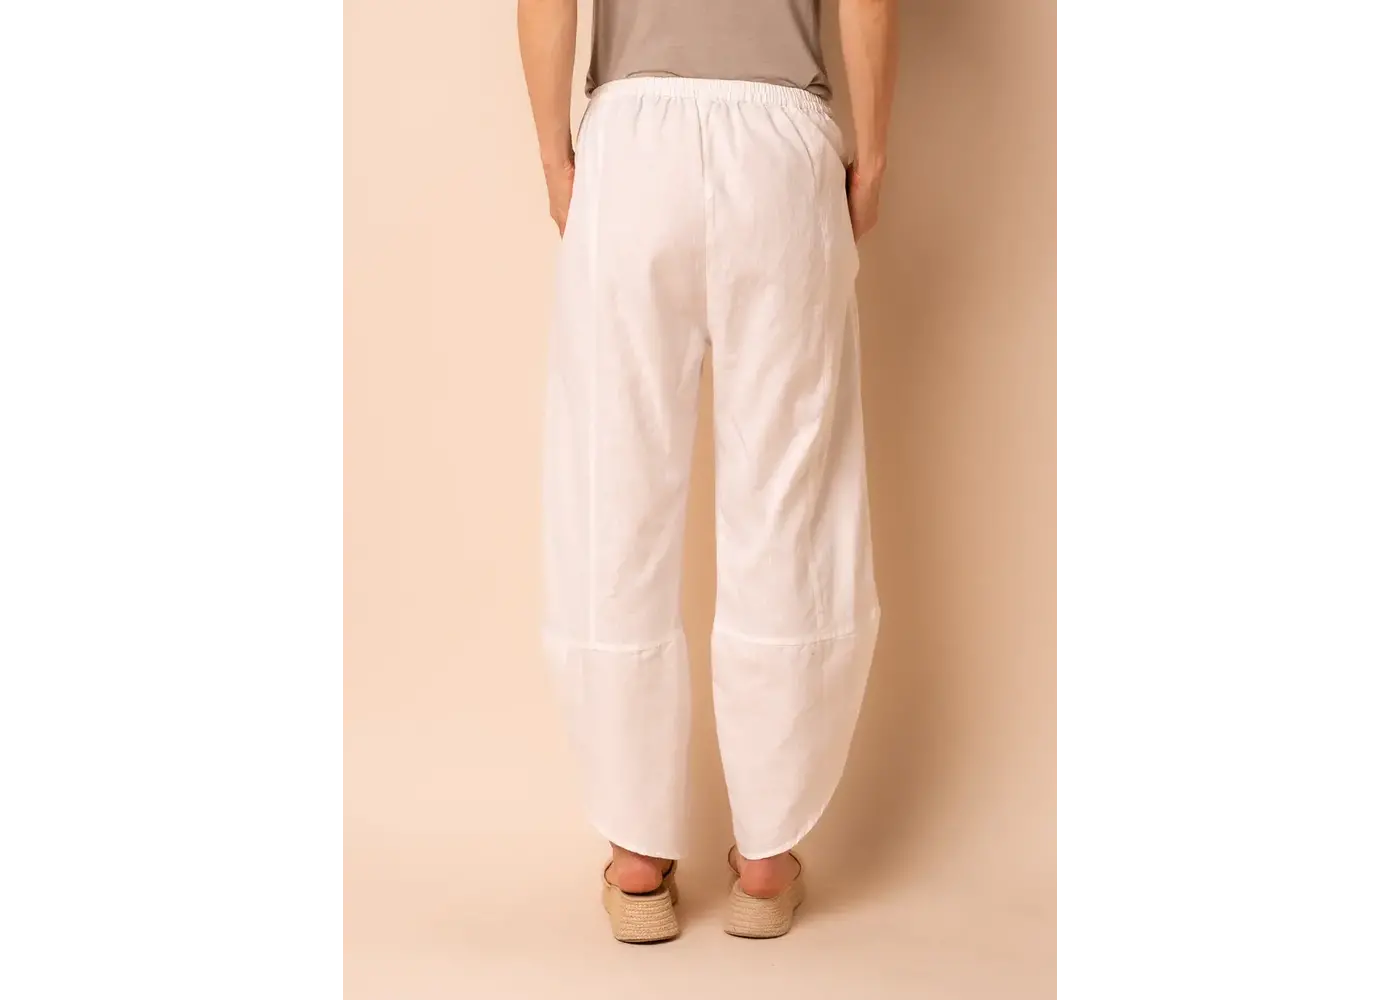 Imagine Fashion Rowen Linen Blend Pants